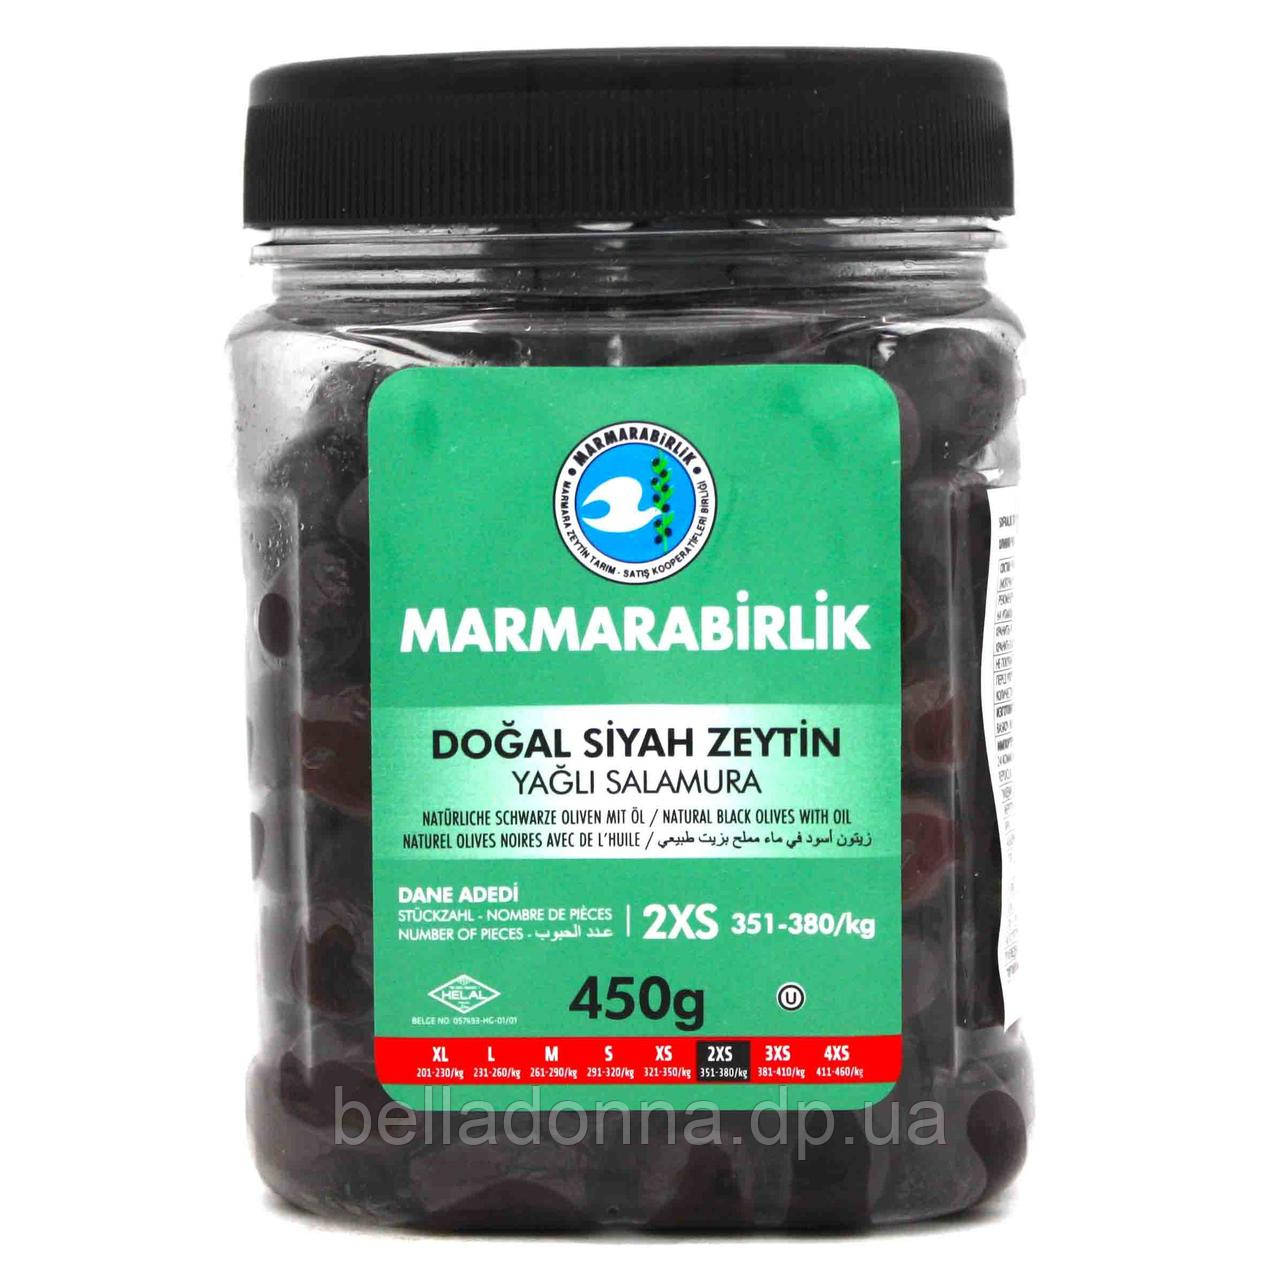 Турецькі оливки вялені (маслини) 450 г Marmarabirlik 2XS